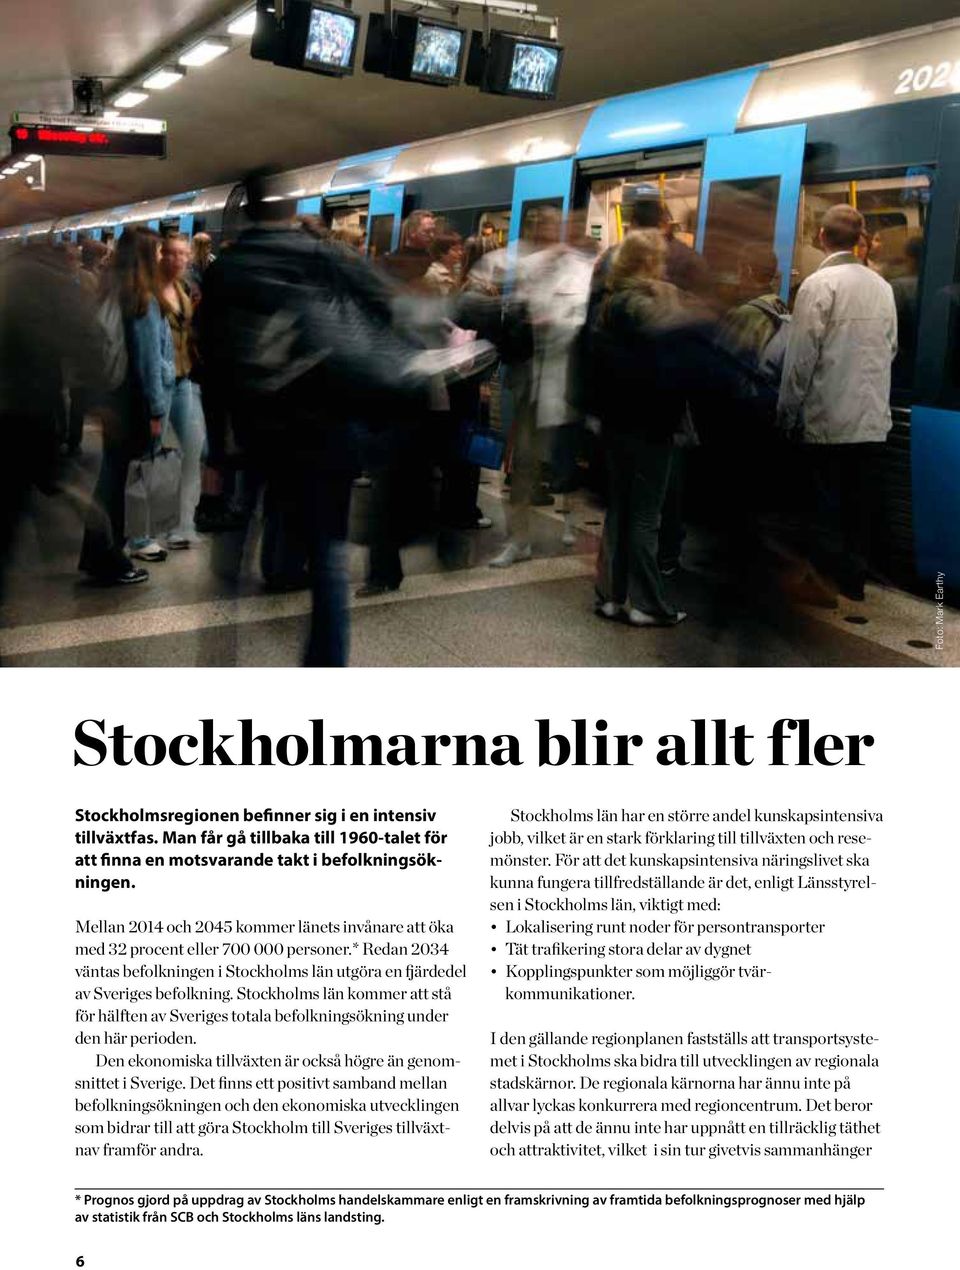 Stockholms län kommer att stå för hälften av Sveriges totala befolkningsökning under den här perioden. Den ekonomiska tillväxten är också högre än genomsnittet i Sverige.